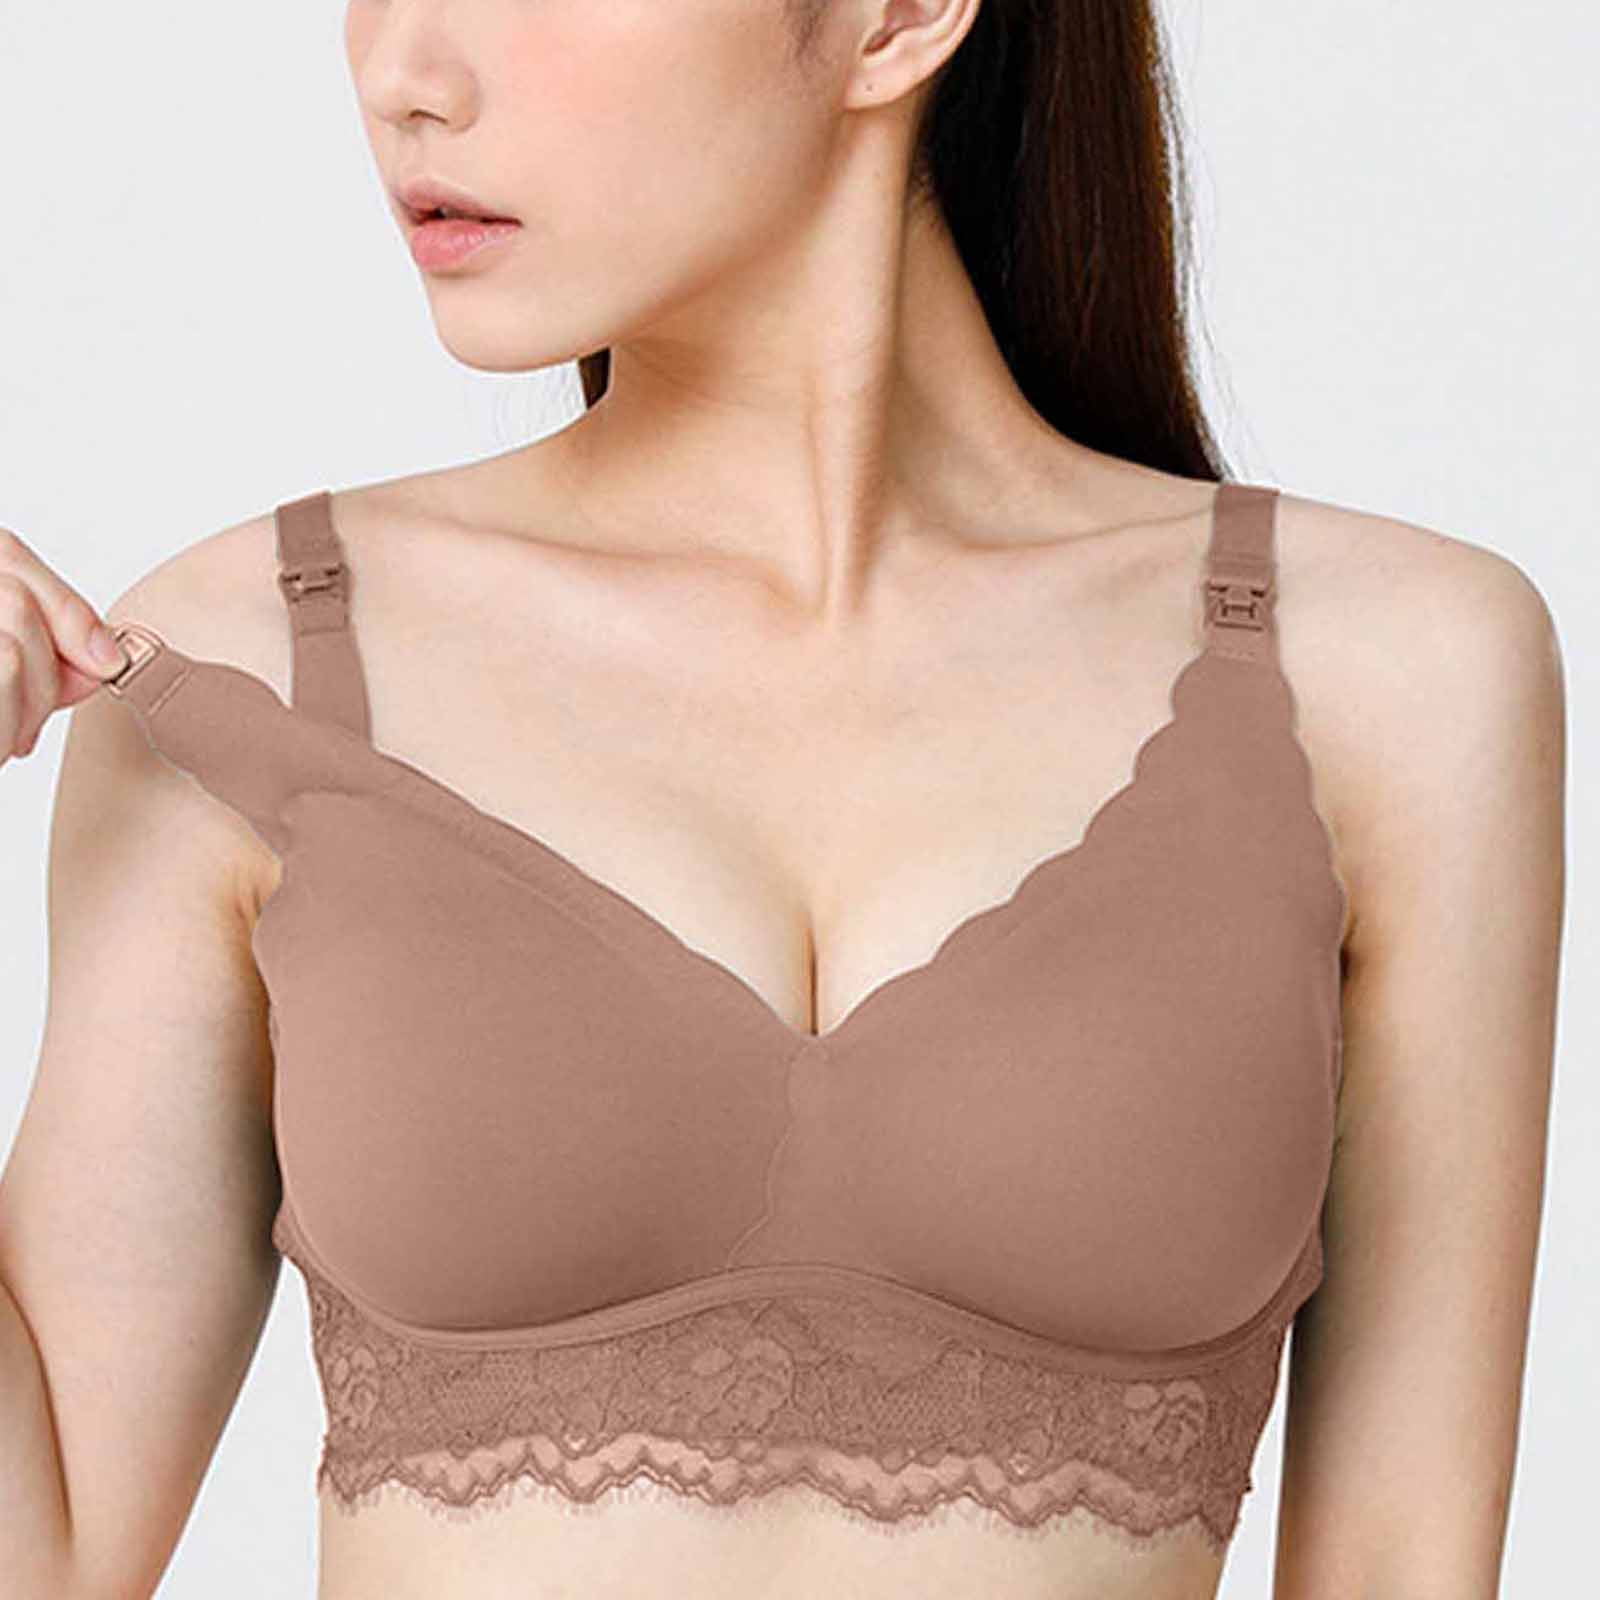 Meichang Women's Lace Bras Plus Size Lift T-shirt Bras Seamless